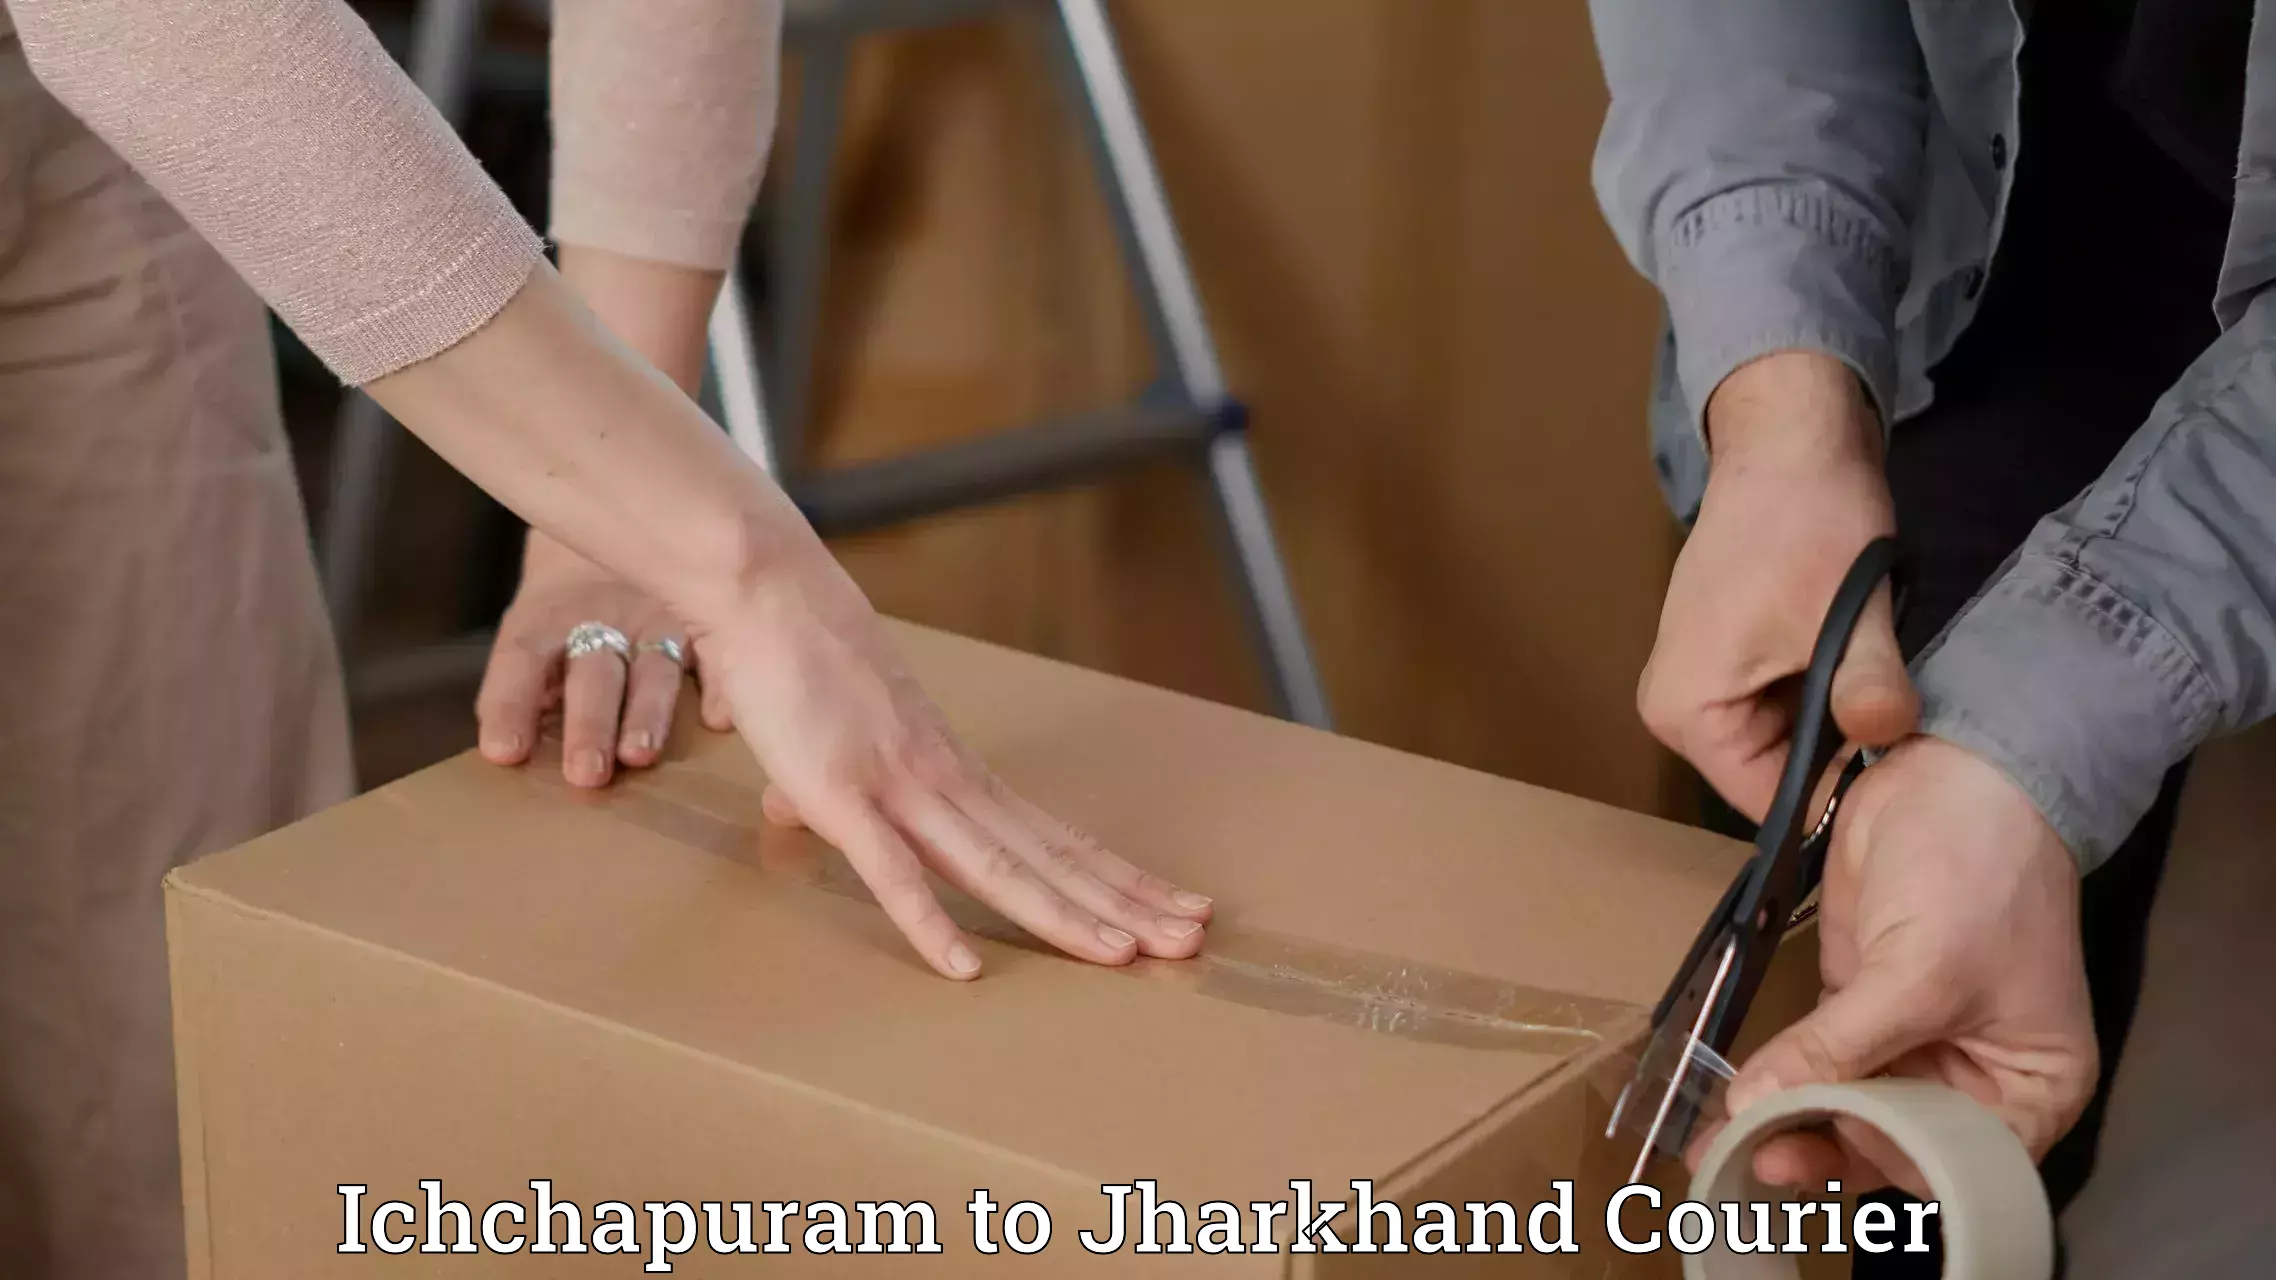 Special handling courier Ichchapuram to Ranka Garhwa